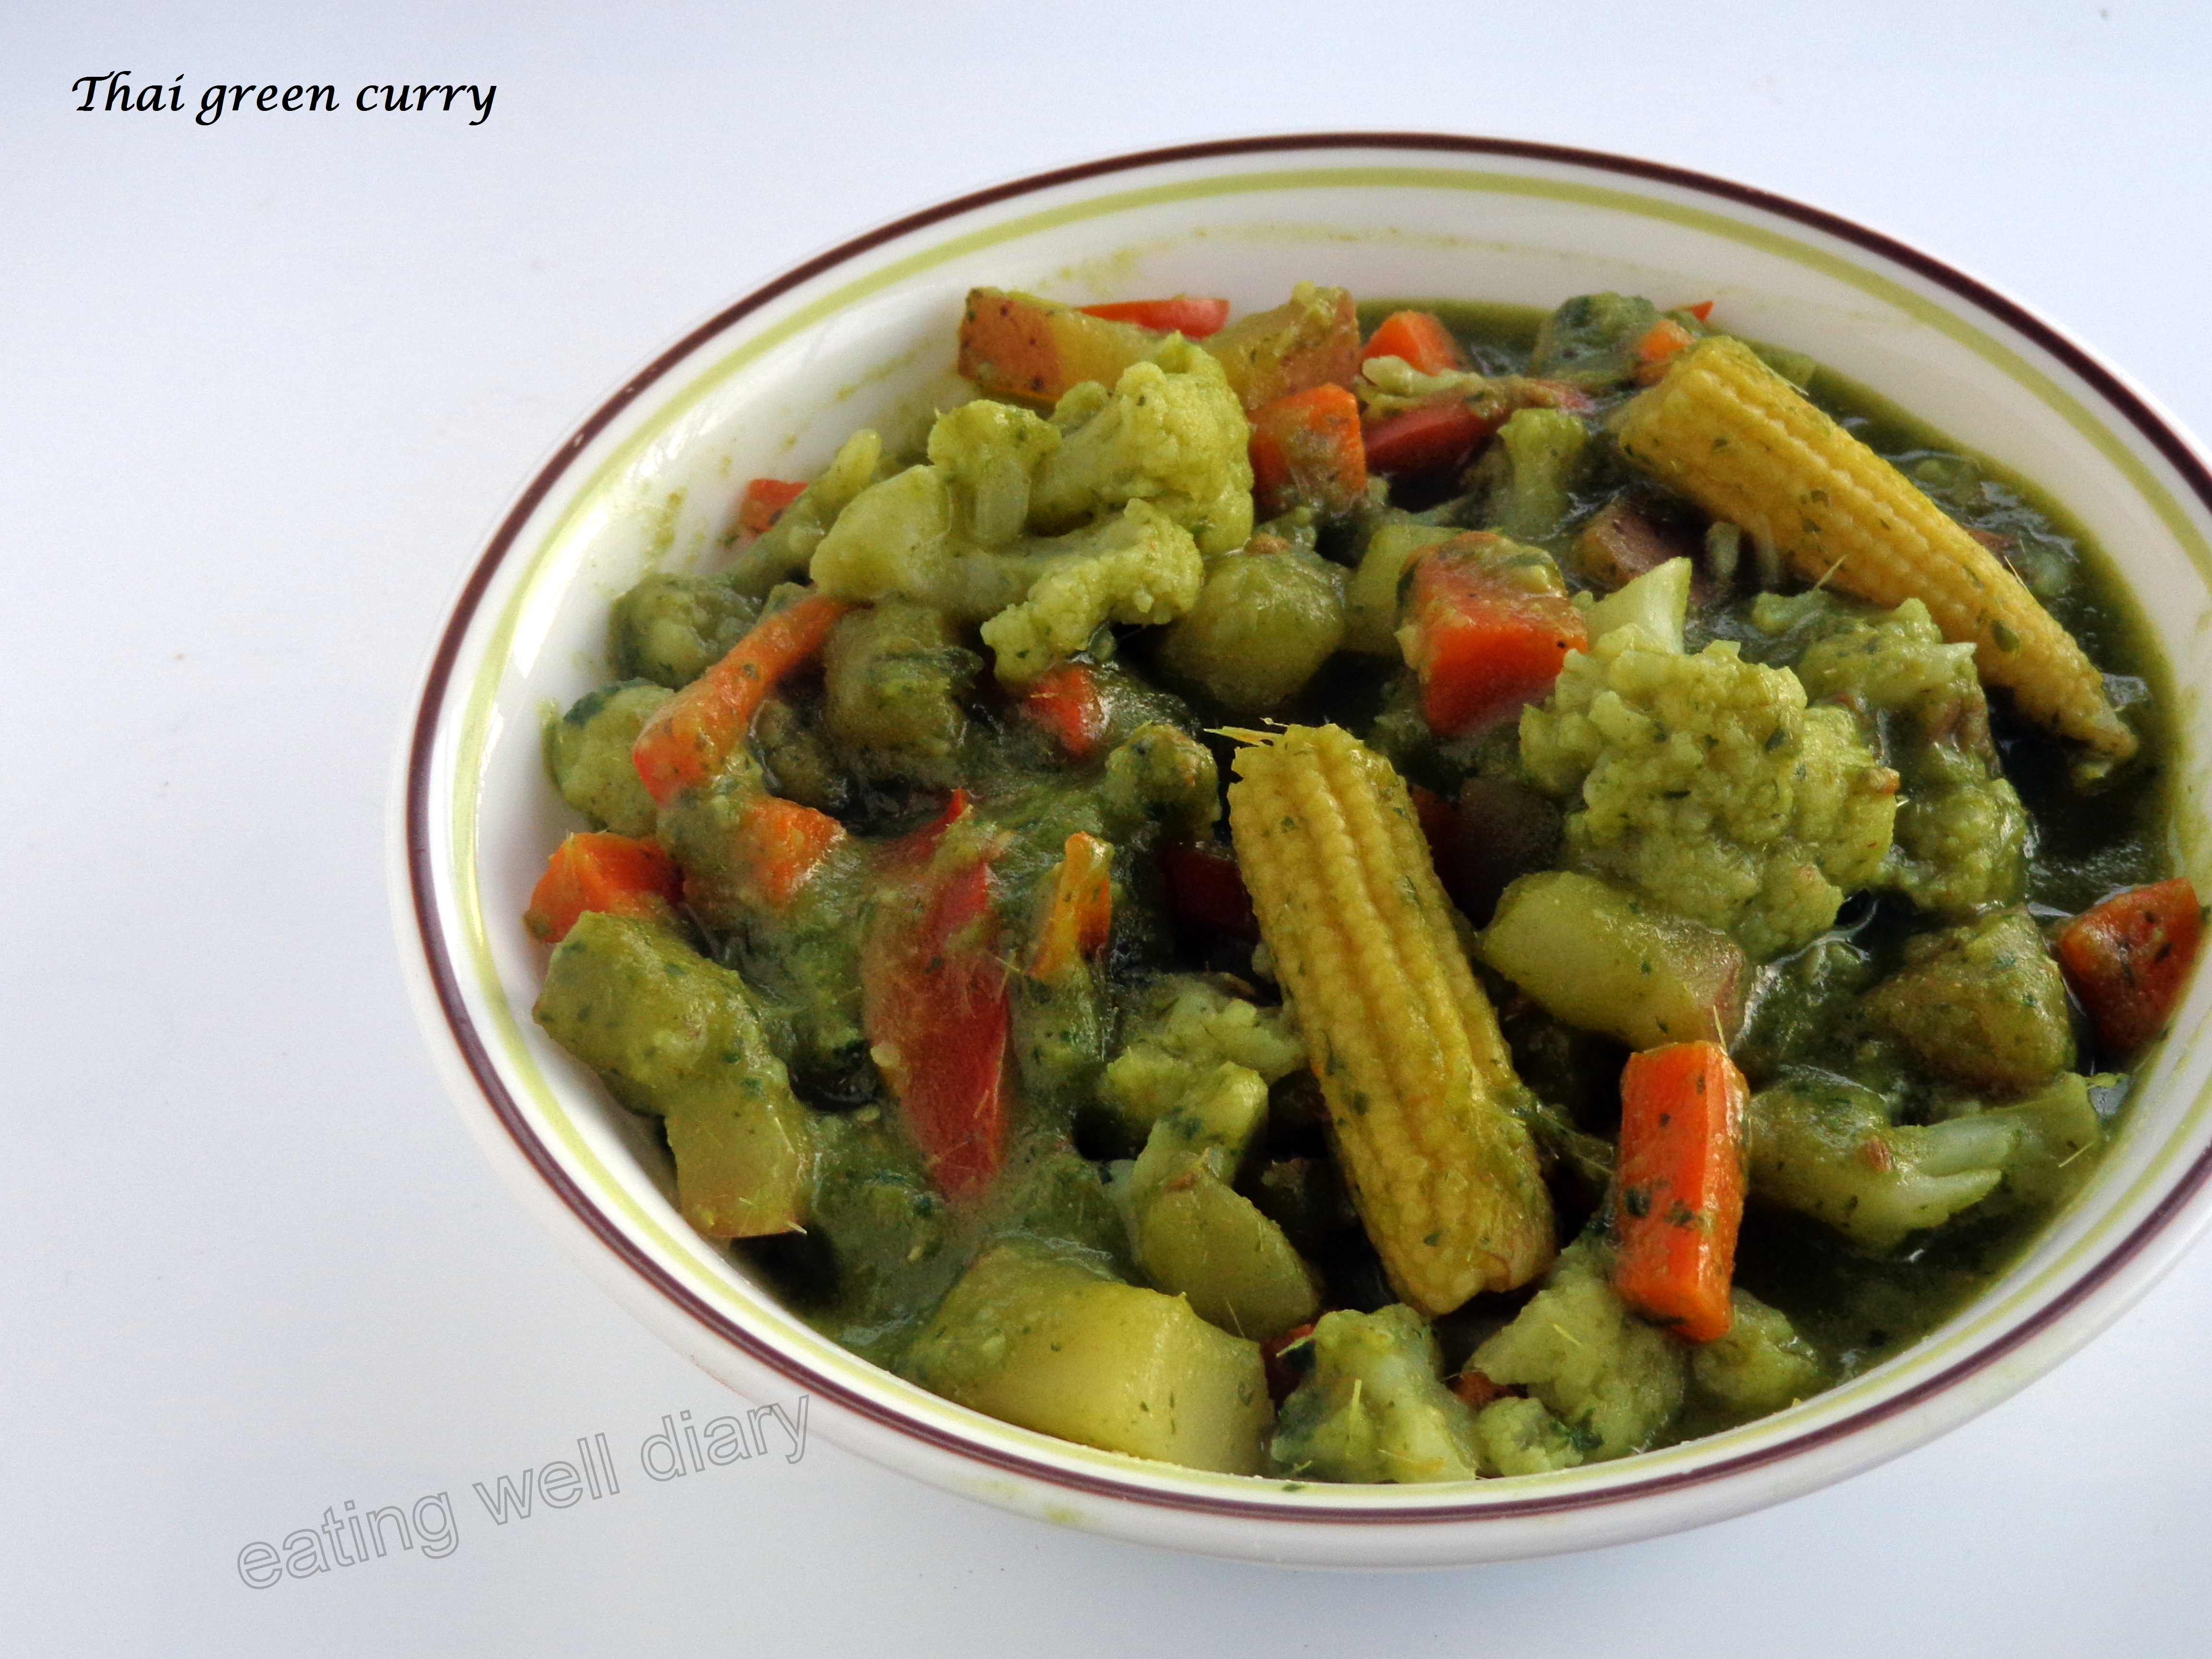 A simple Thai green curry